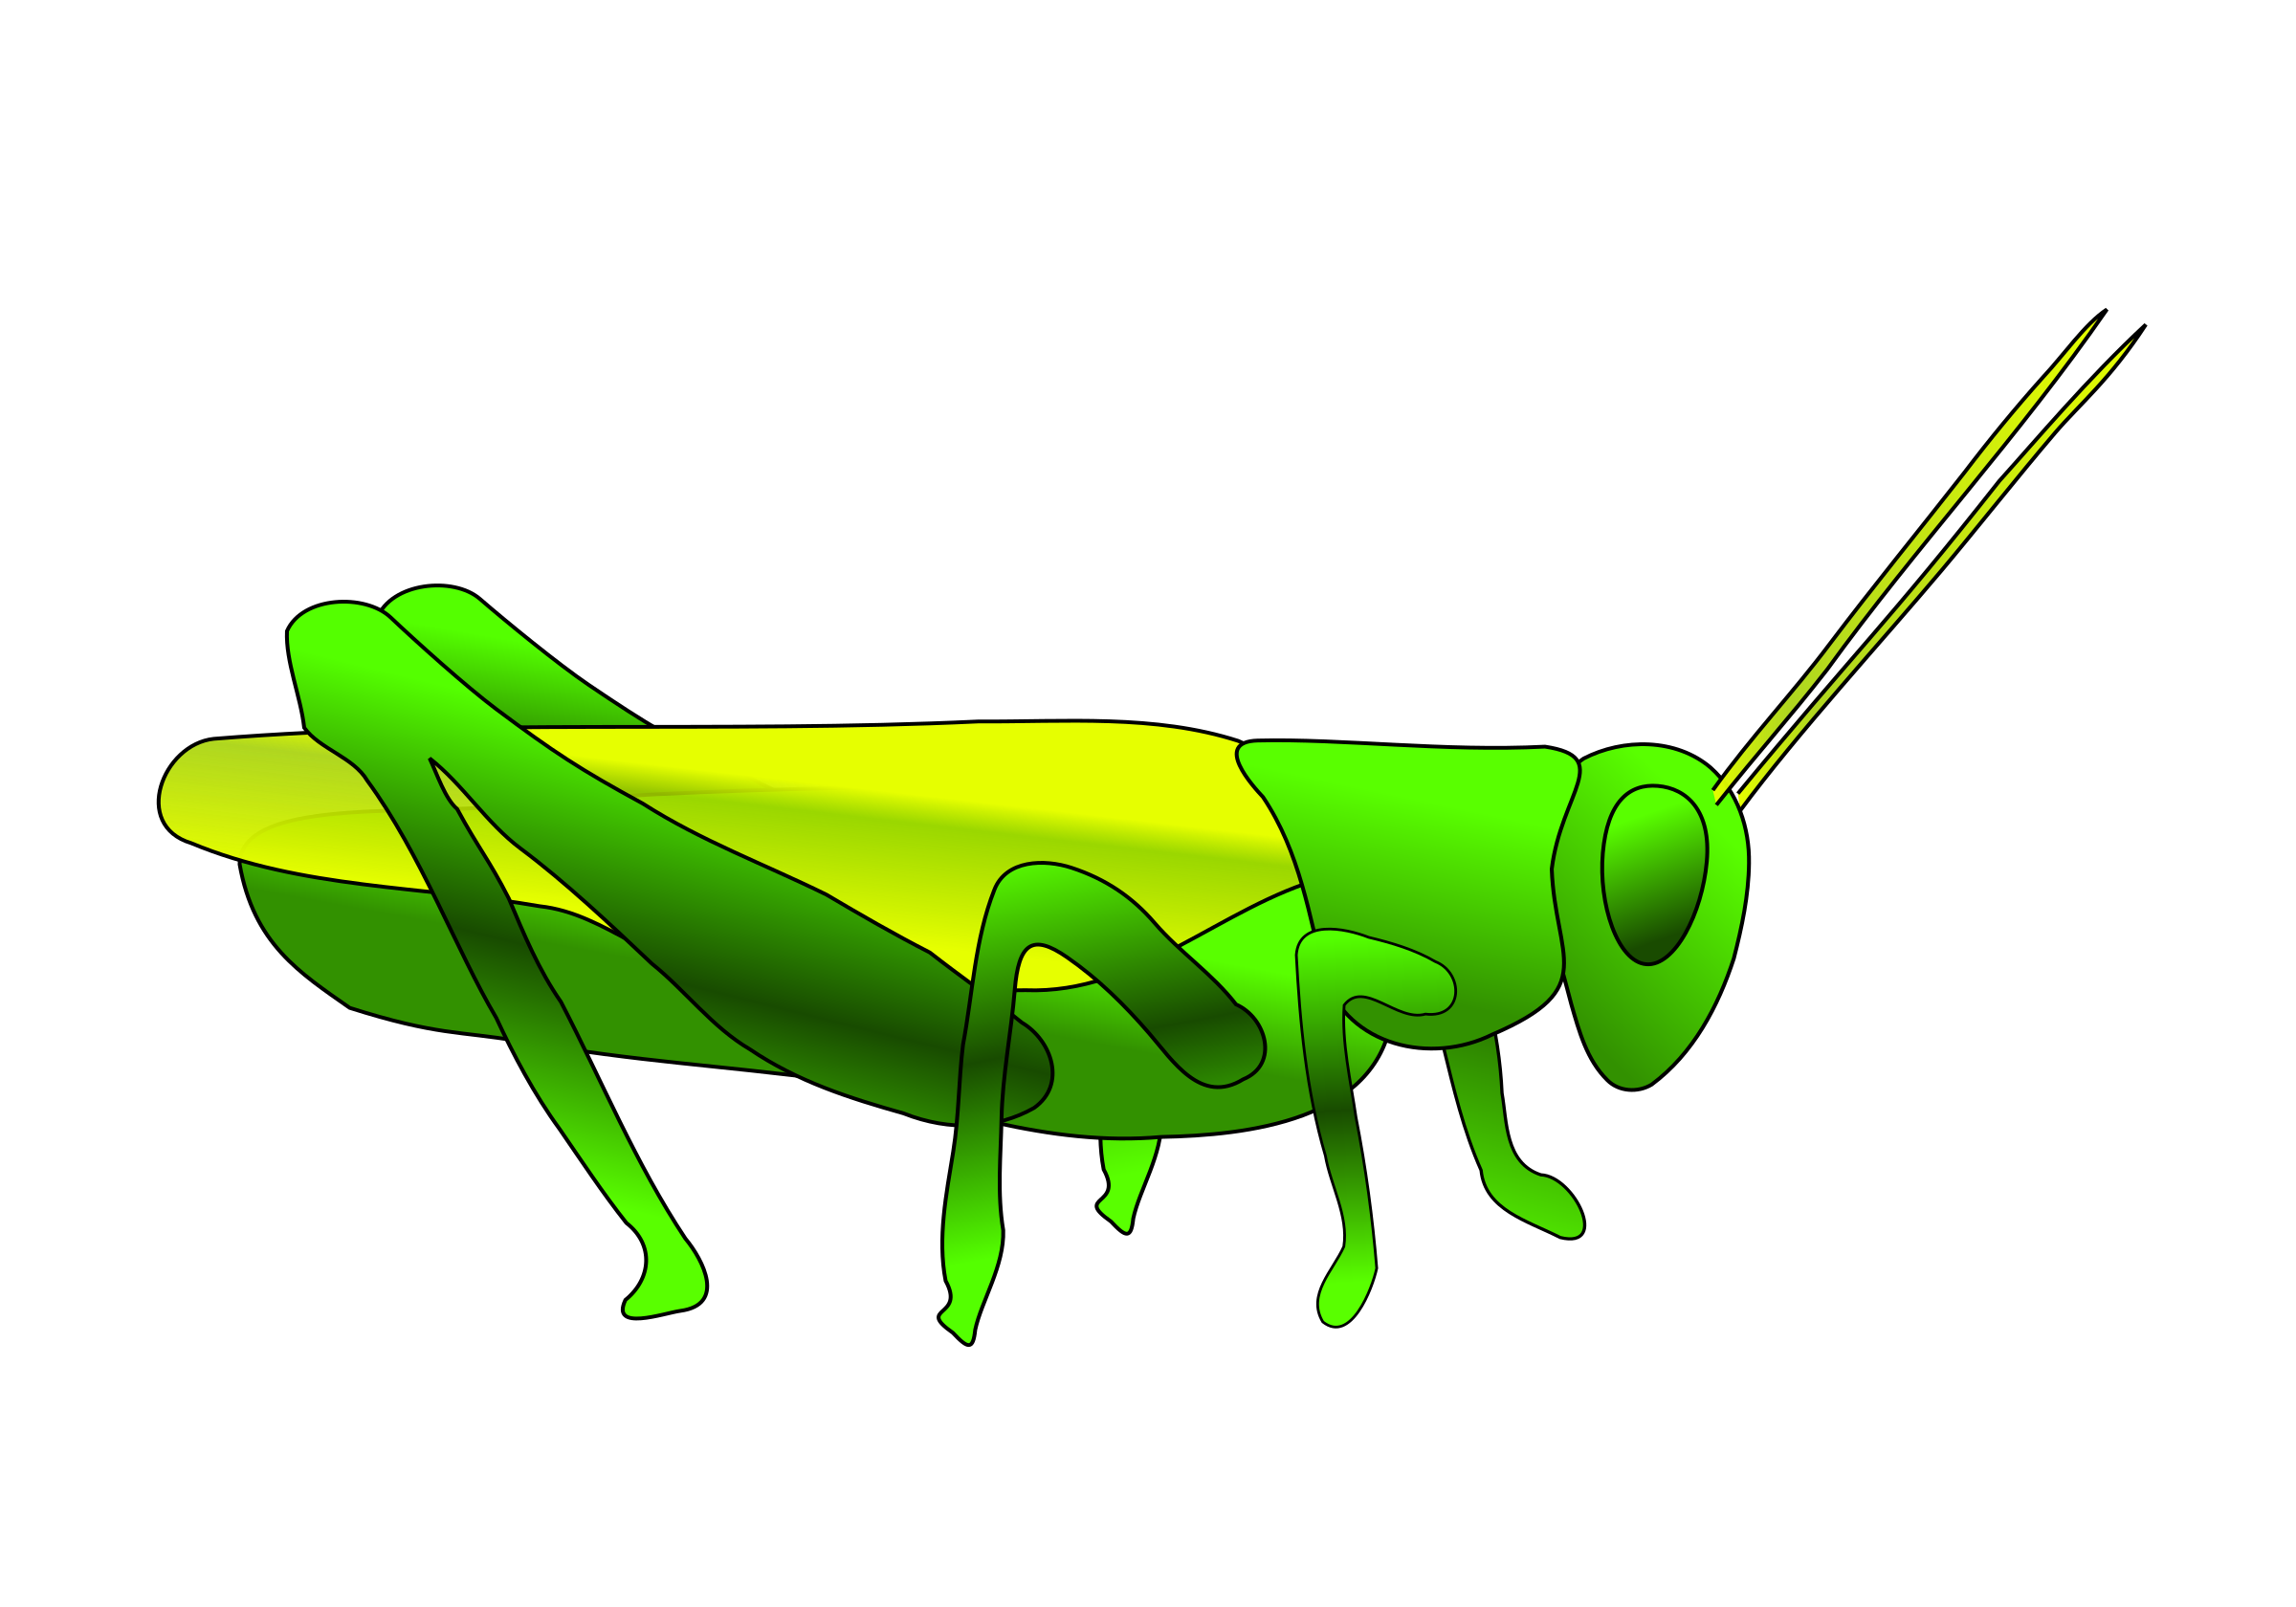 cricket clipart invertebrate